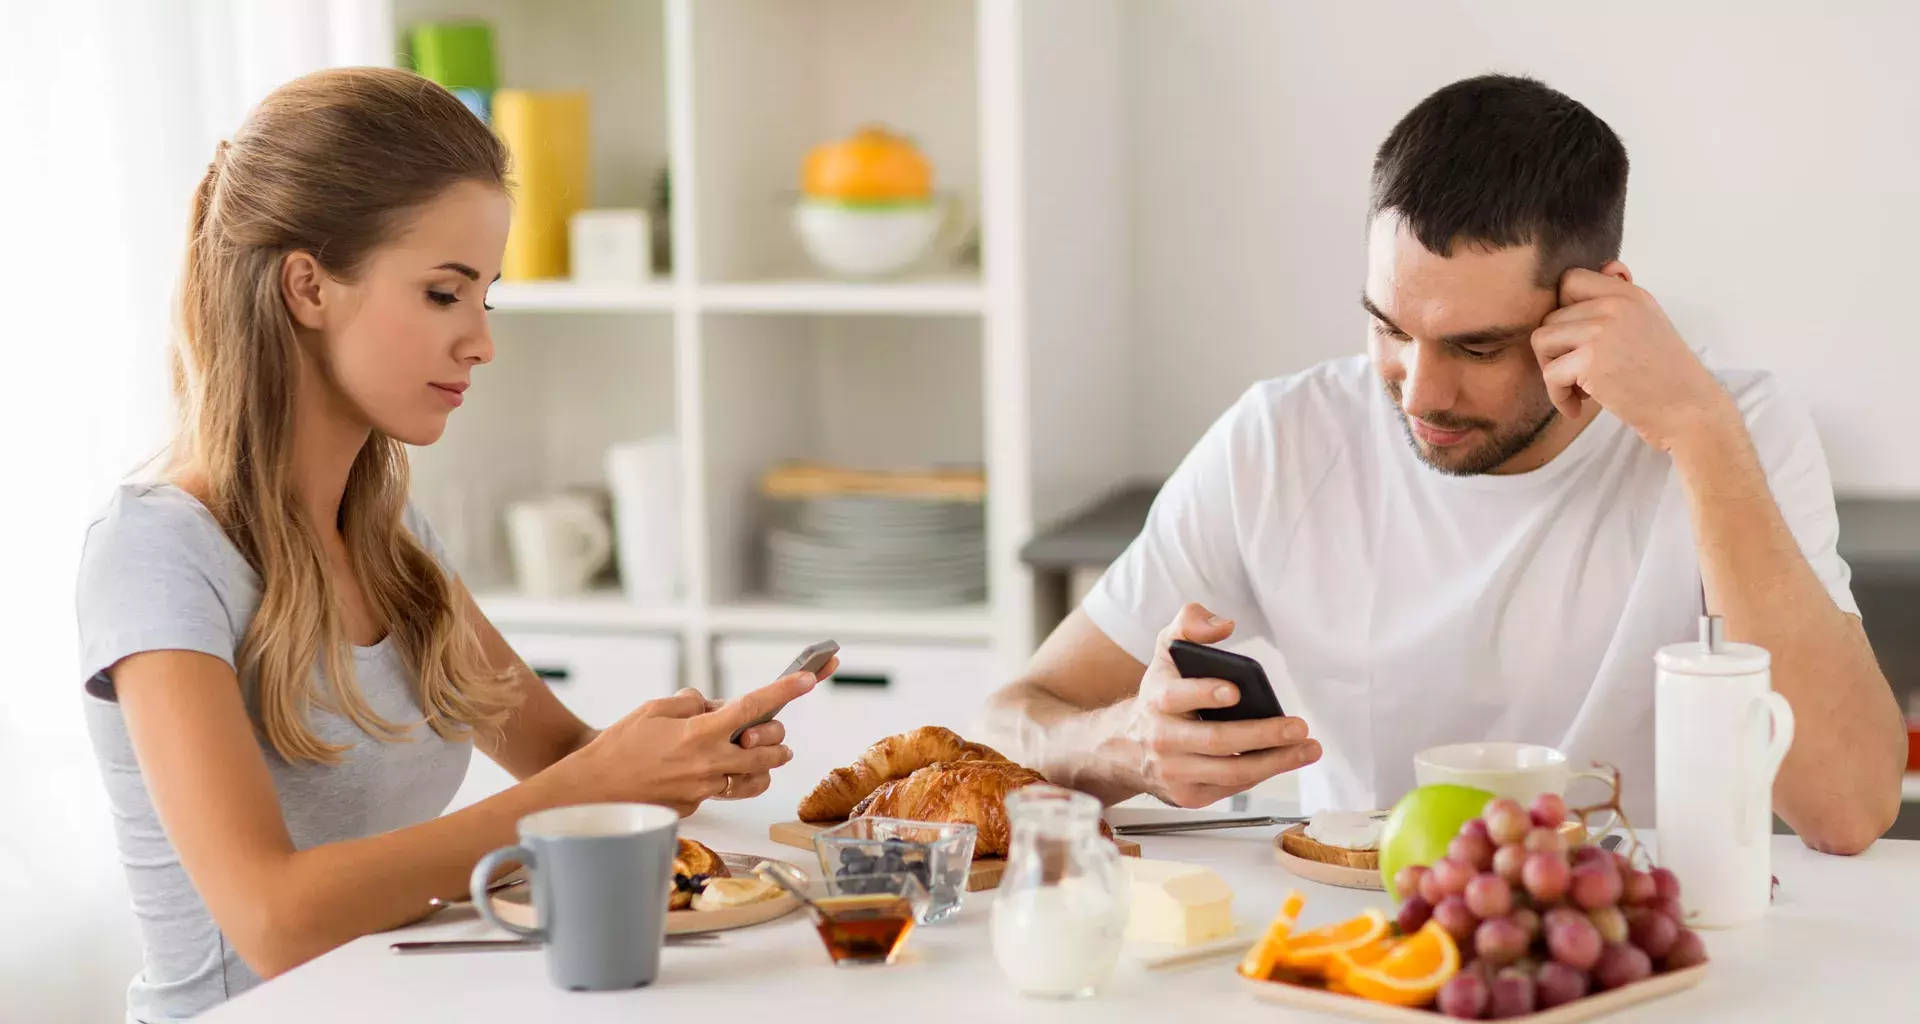 Dos personas comiendo mientras revisan sus dispositivos móviles.